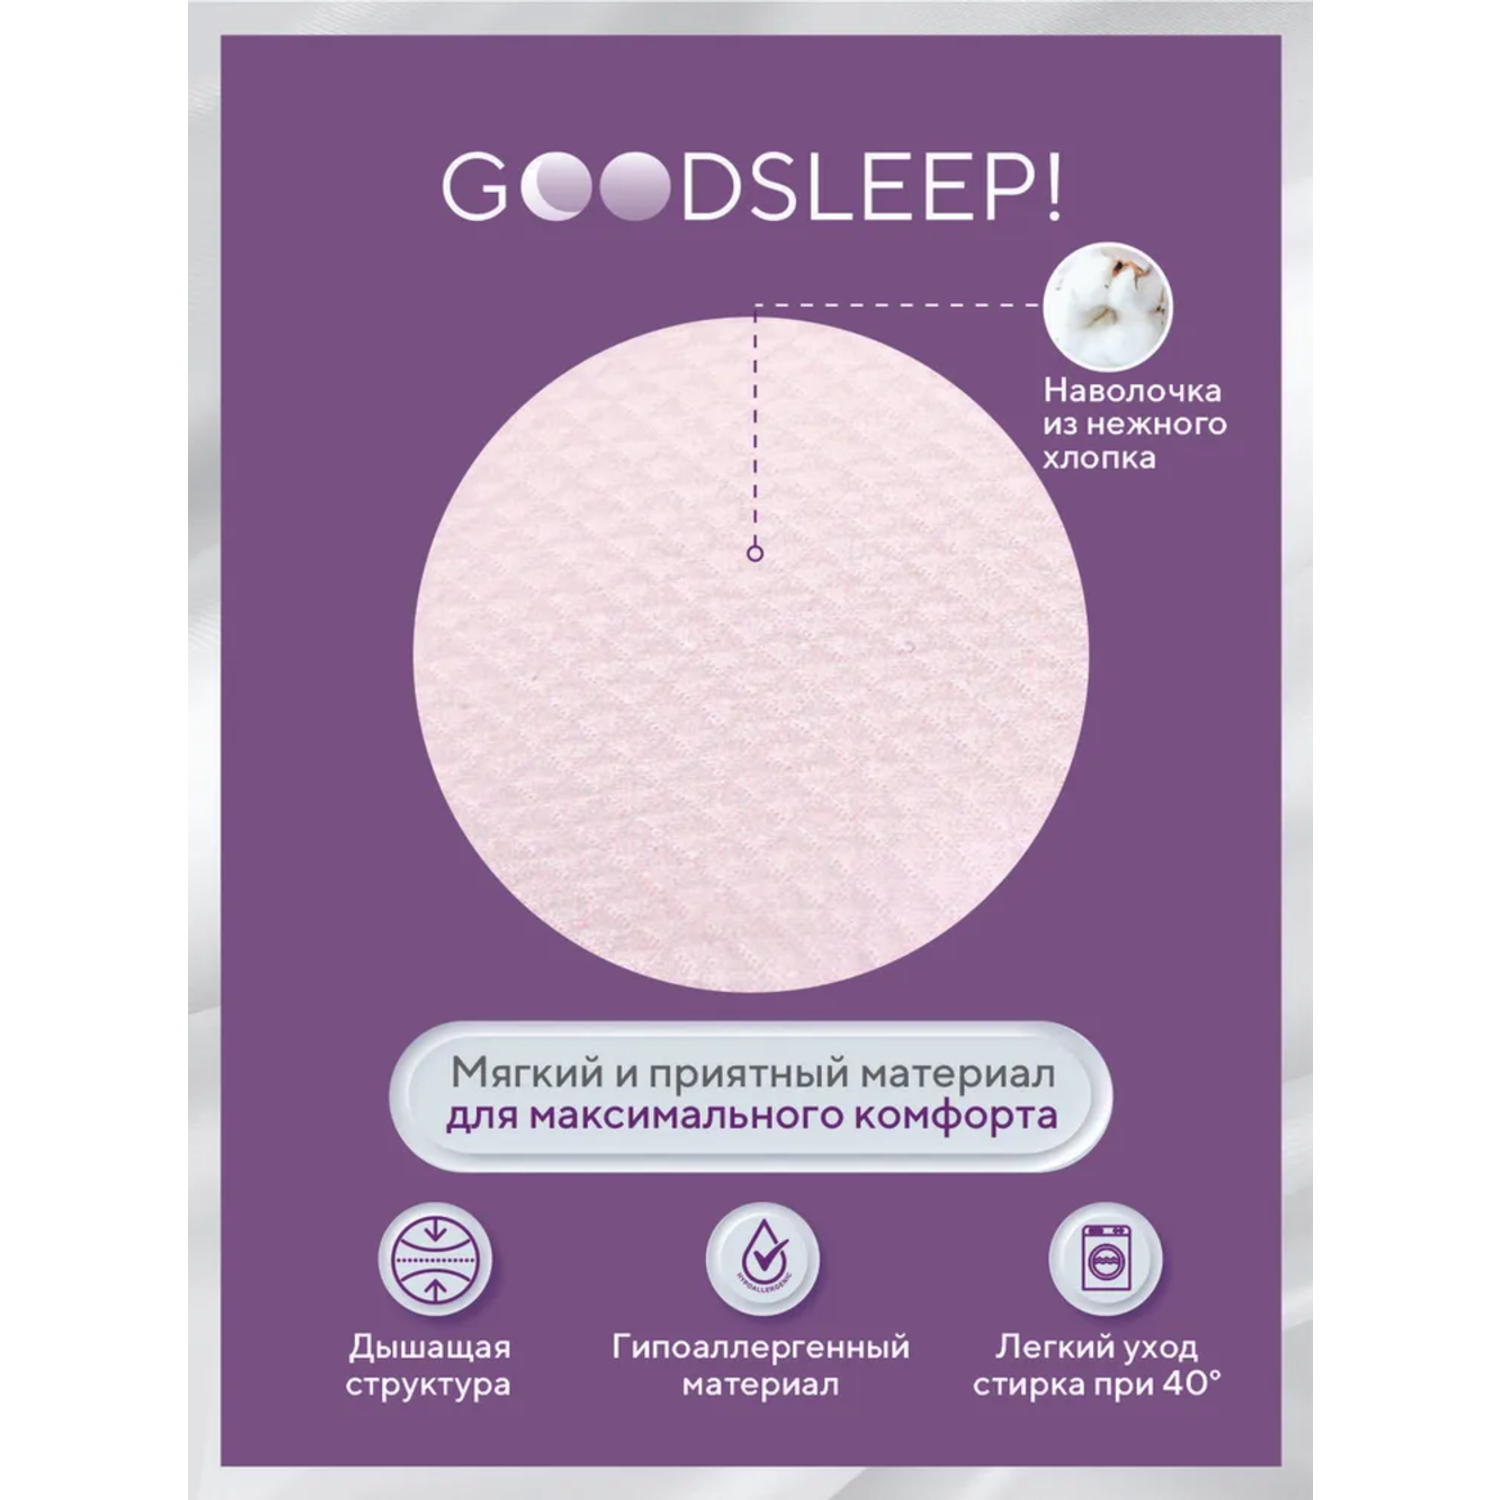 Ортопедическая подушка Goodsleep! с эффектом памяти под голову для детей от 1 до 18 мес - фото 3